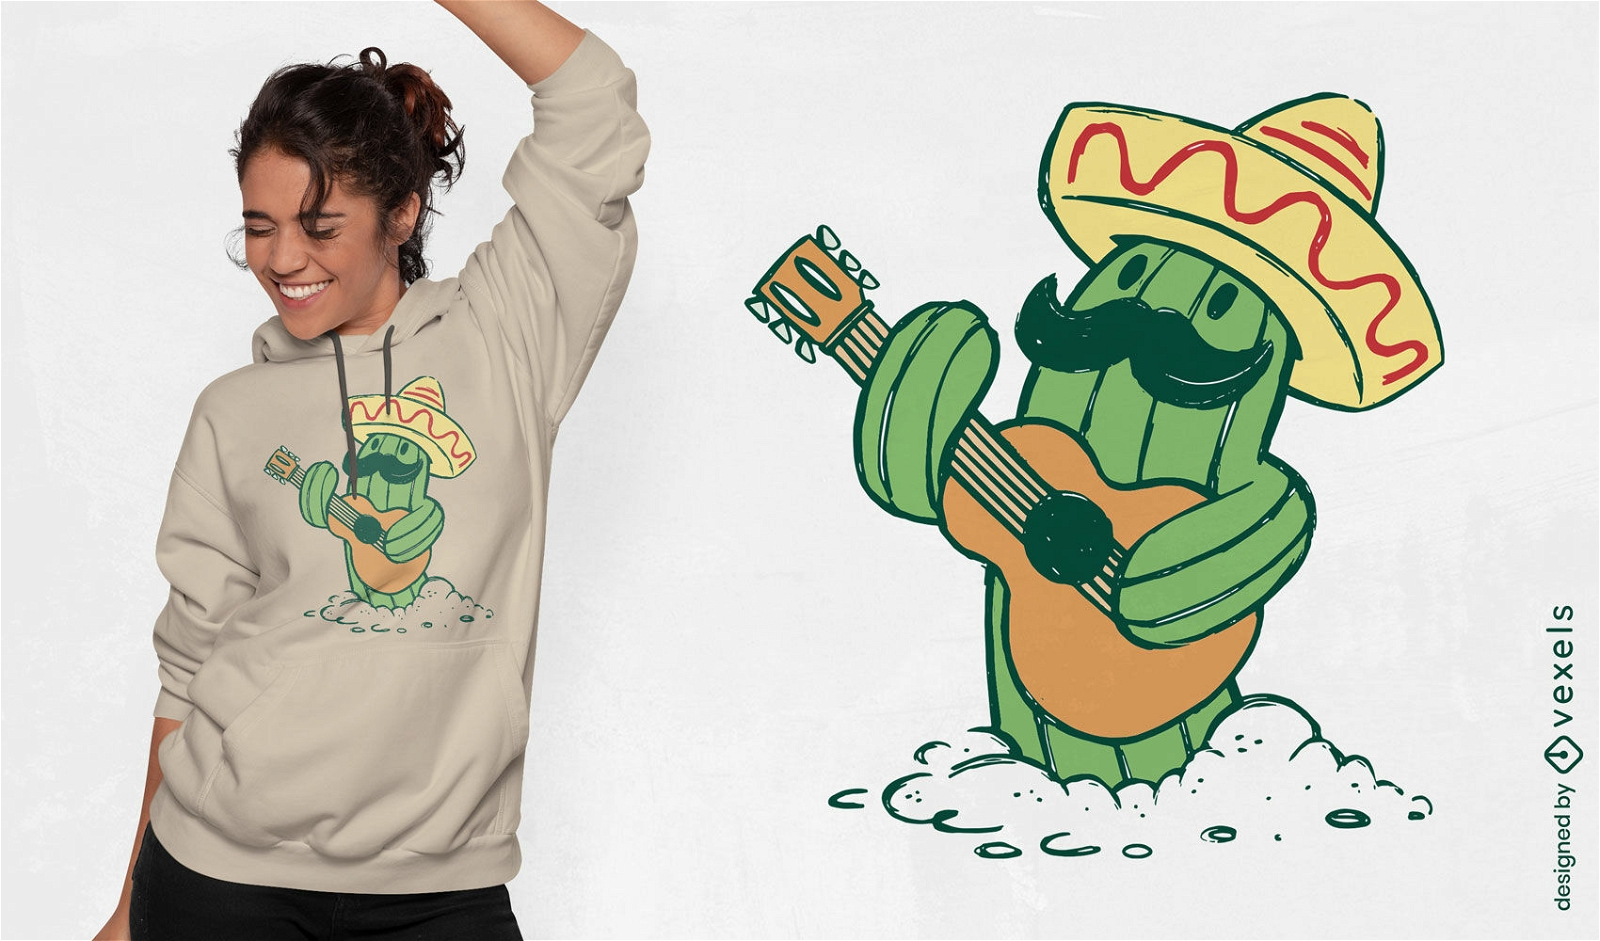 Dise?o de camiseta de cactus con sombrero mexicano y guitarra.